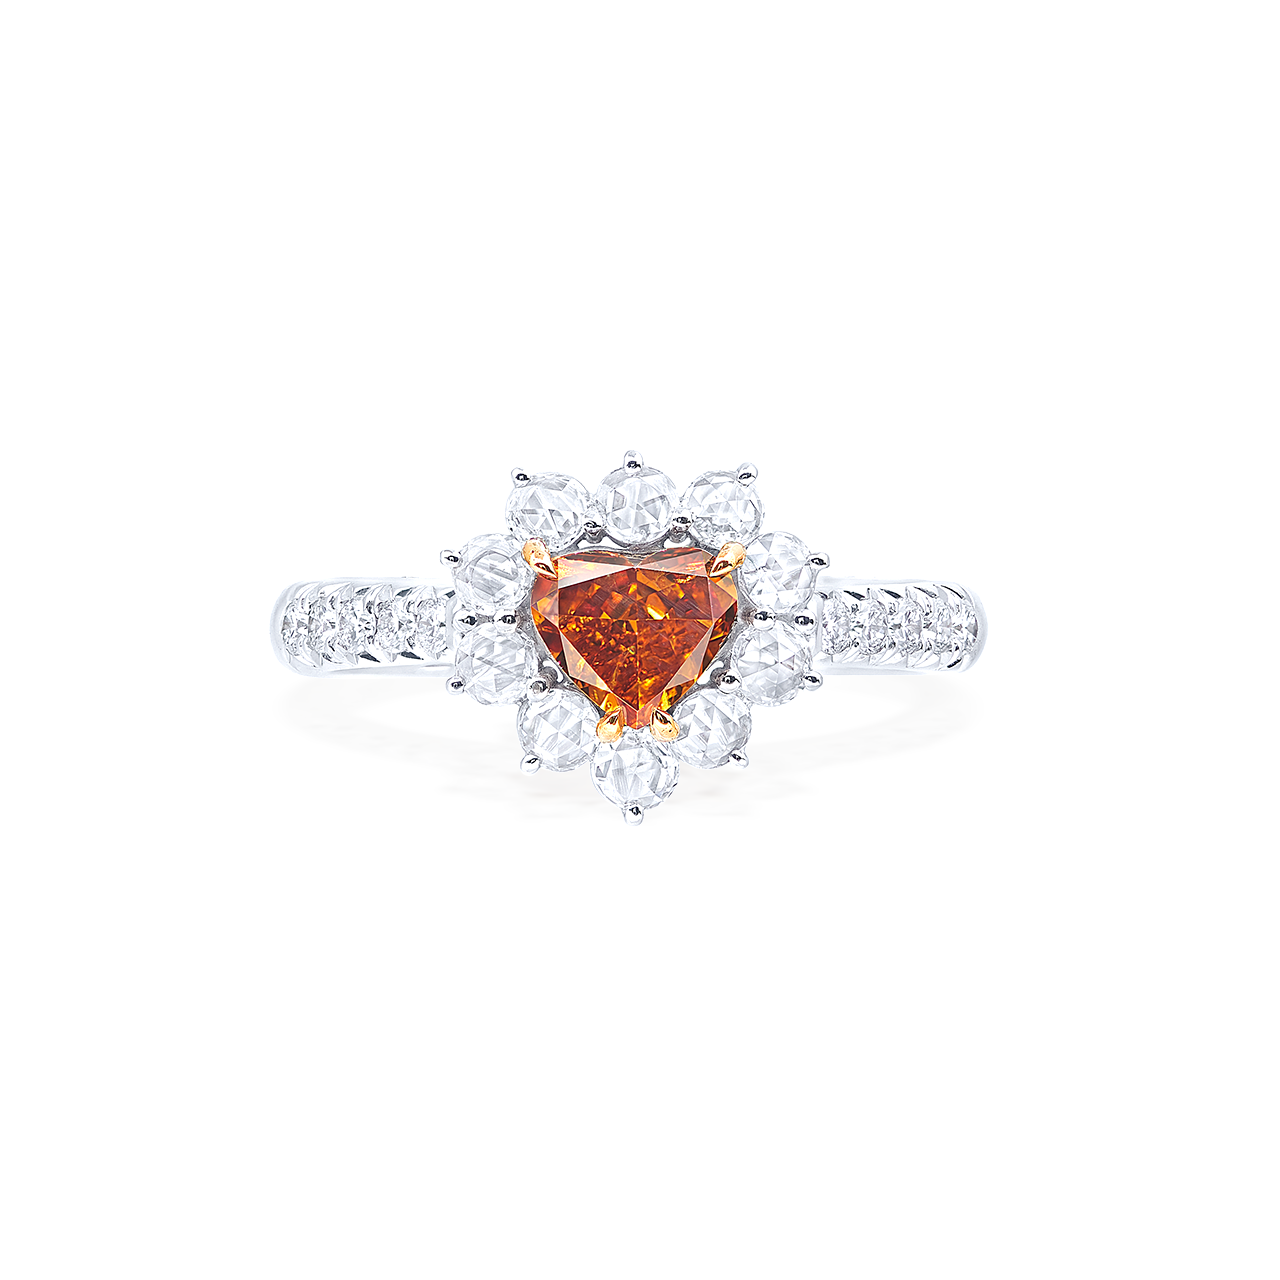 GIA 0.65克拉 深彩黃橘鑽戒
Fancy Deep Yellowish Orange Colored
Diamond Ring